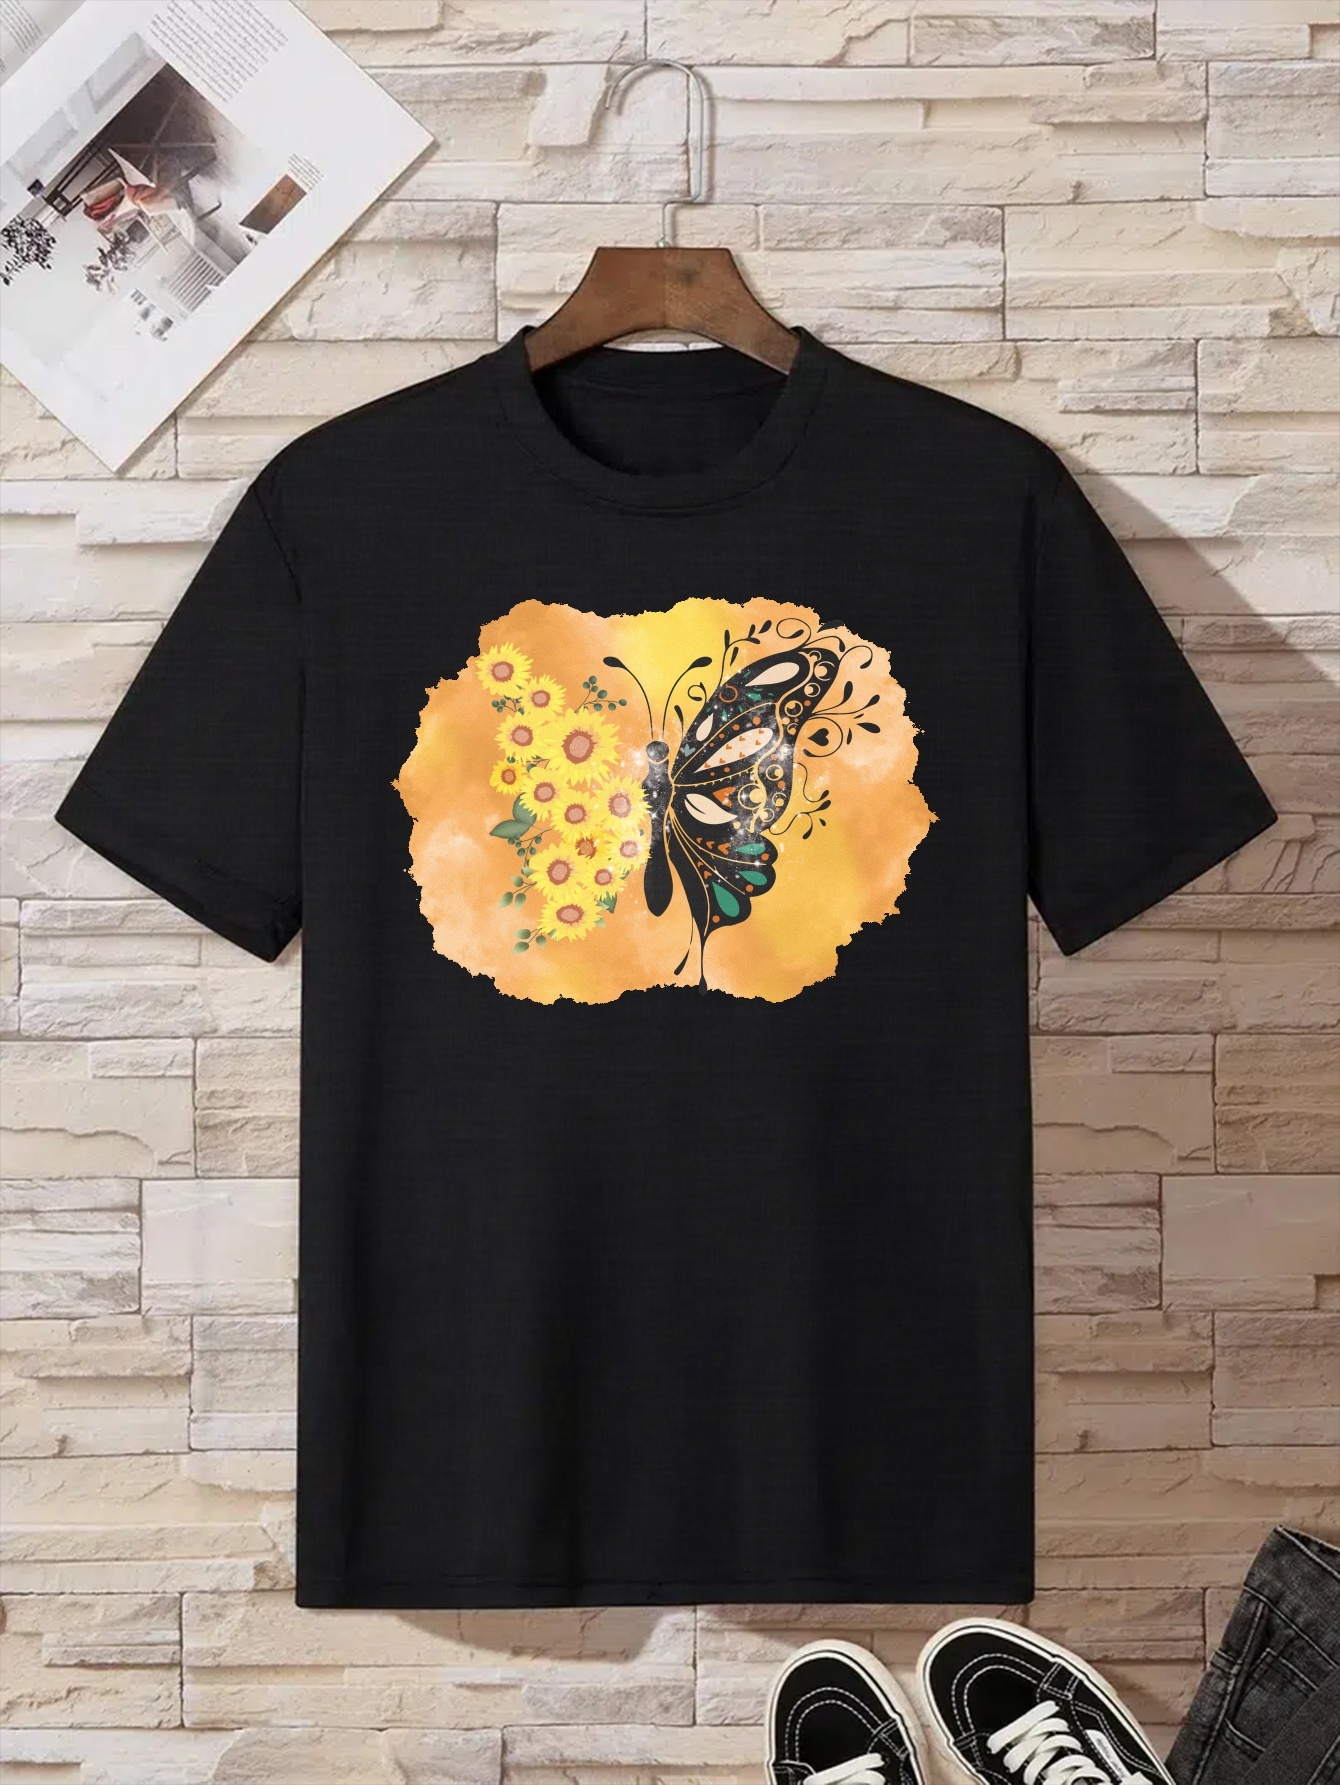 Camiseta De Manga Corta De Algodón De Gran Tamaño Para Hombre, Ropa  Superior Informal Suelta Y Cómoda